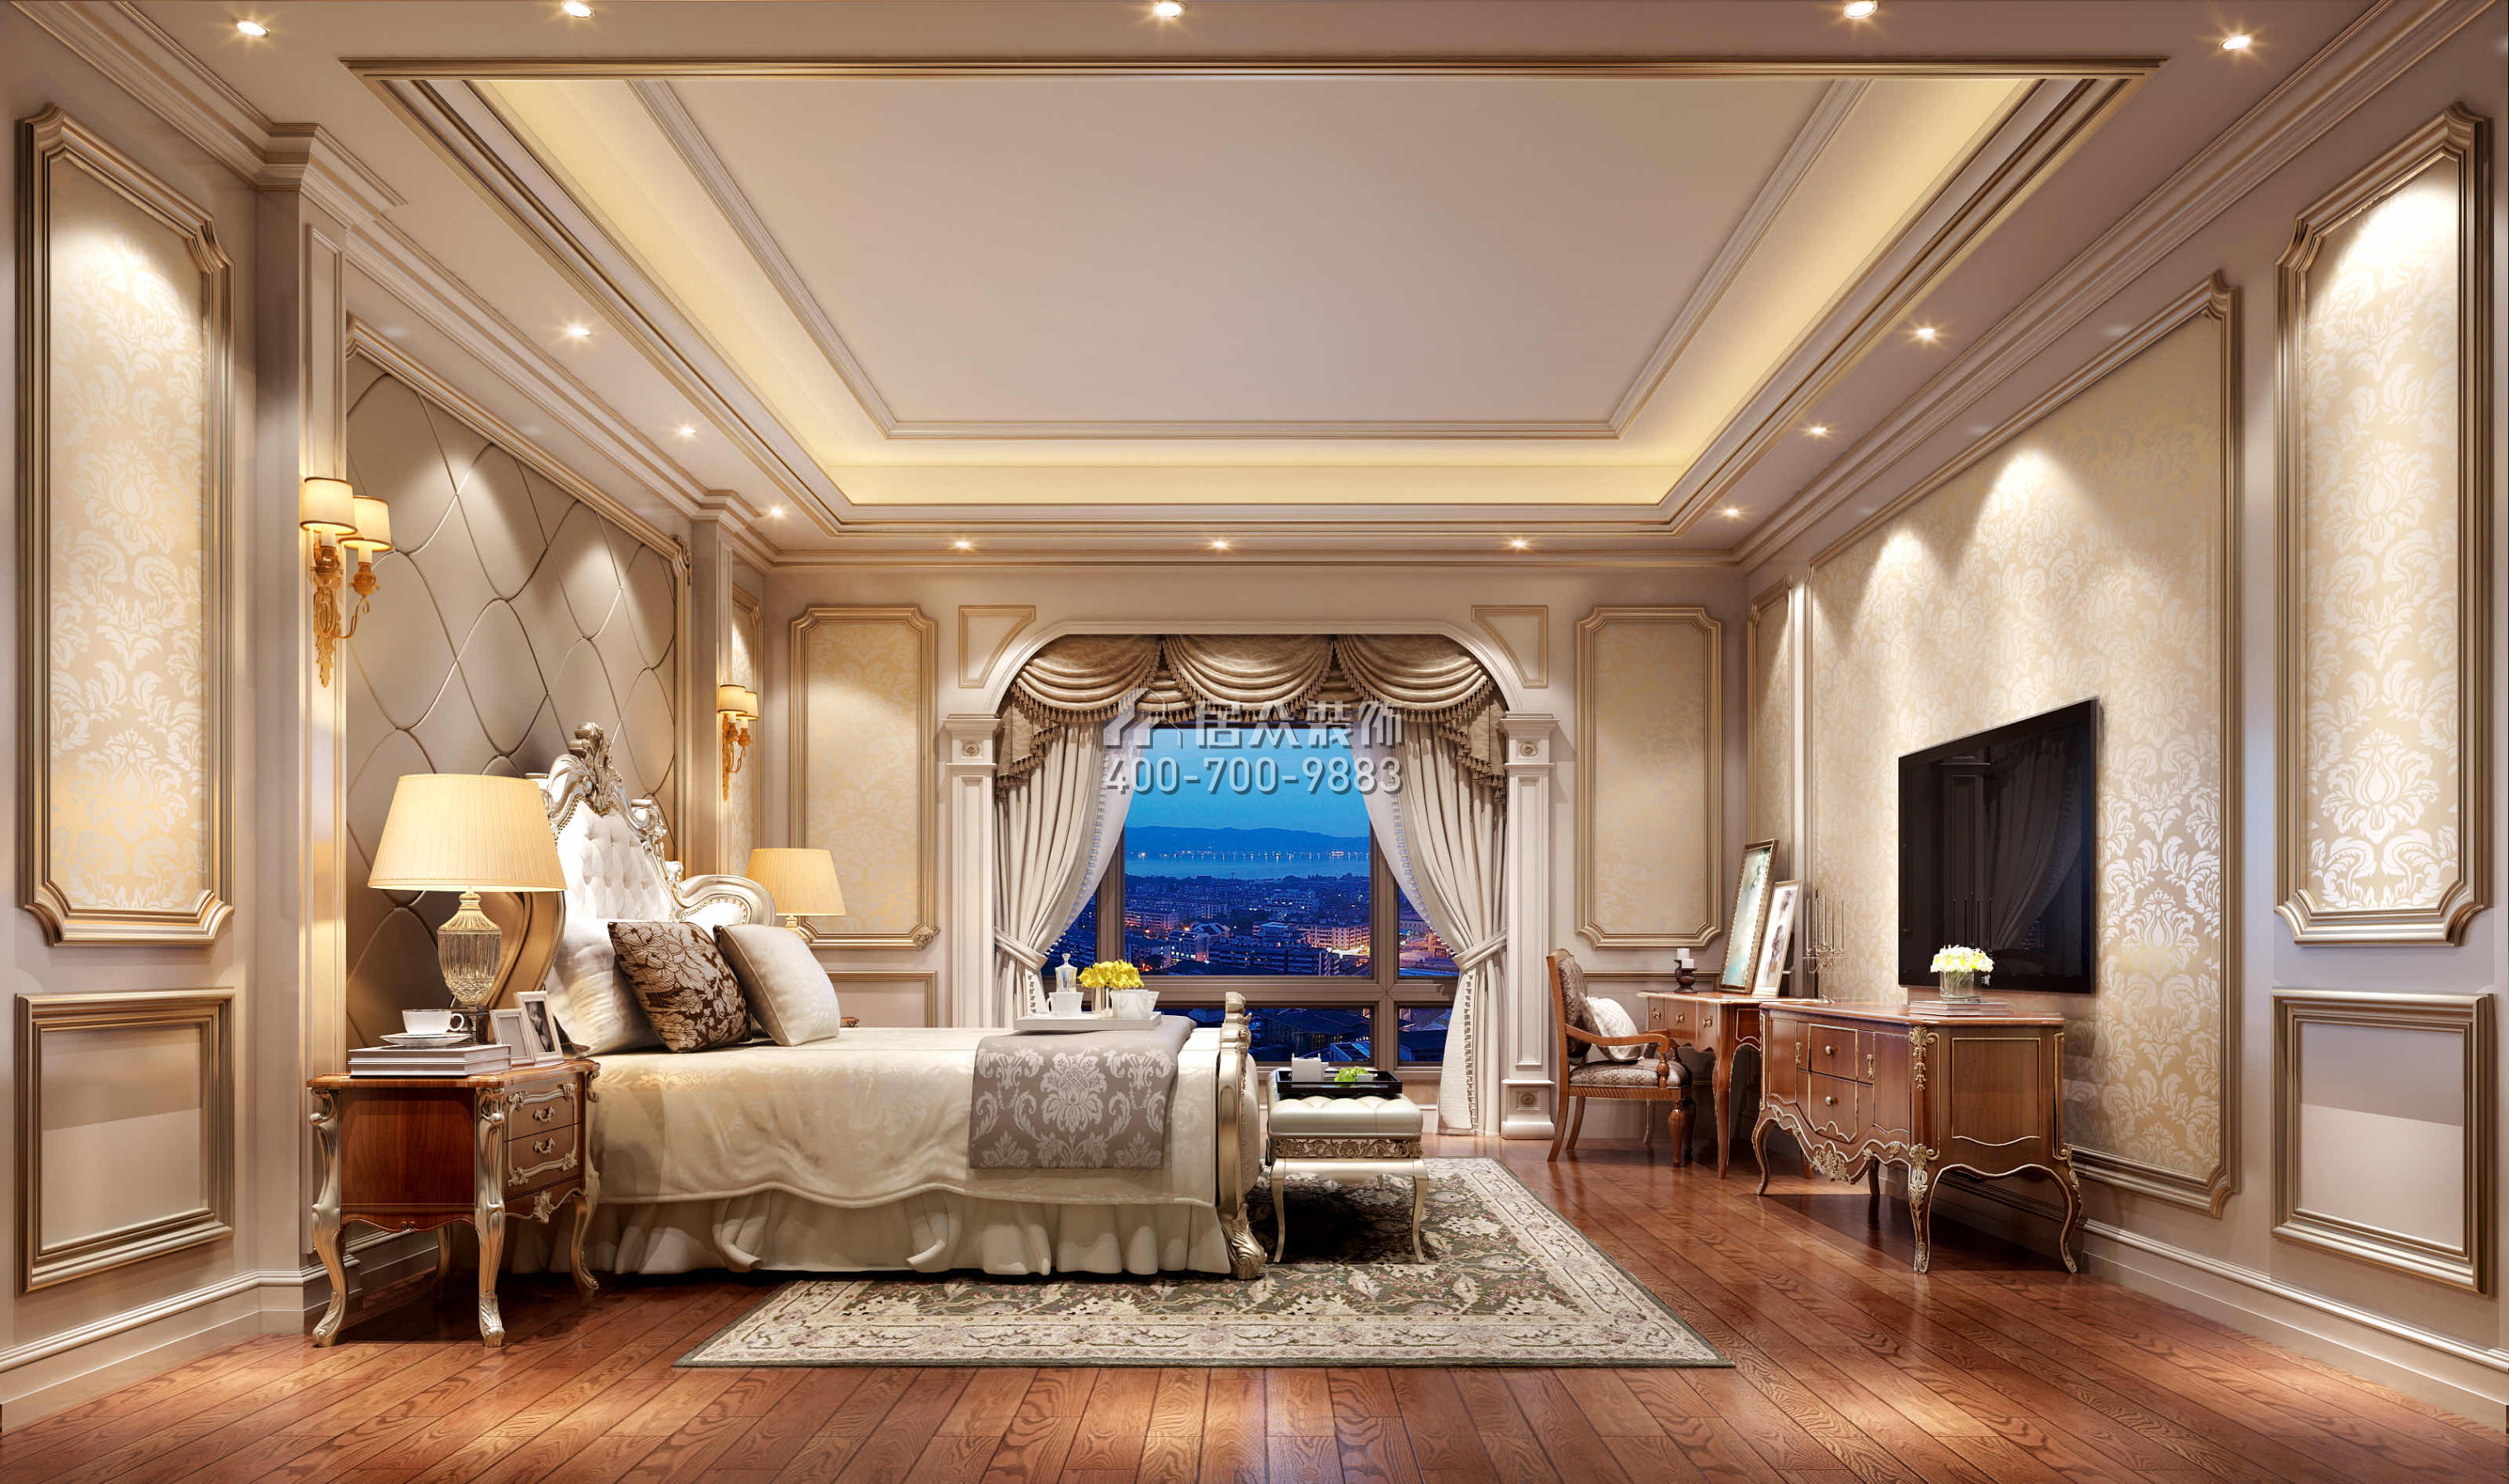 東江明珠花園600平方米歐式風格別墅戶型臥室裝修效果圖